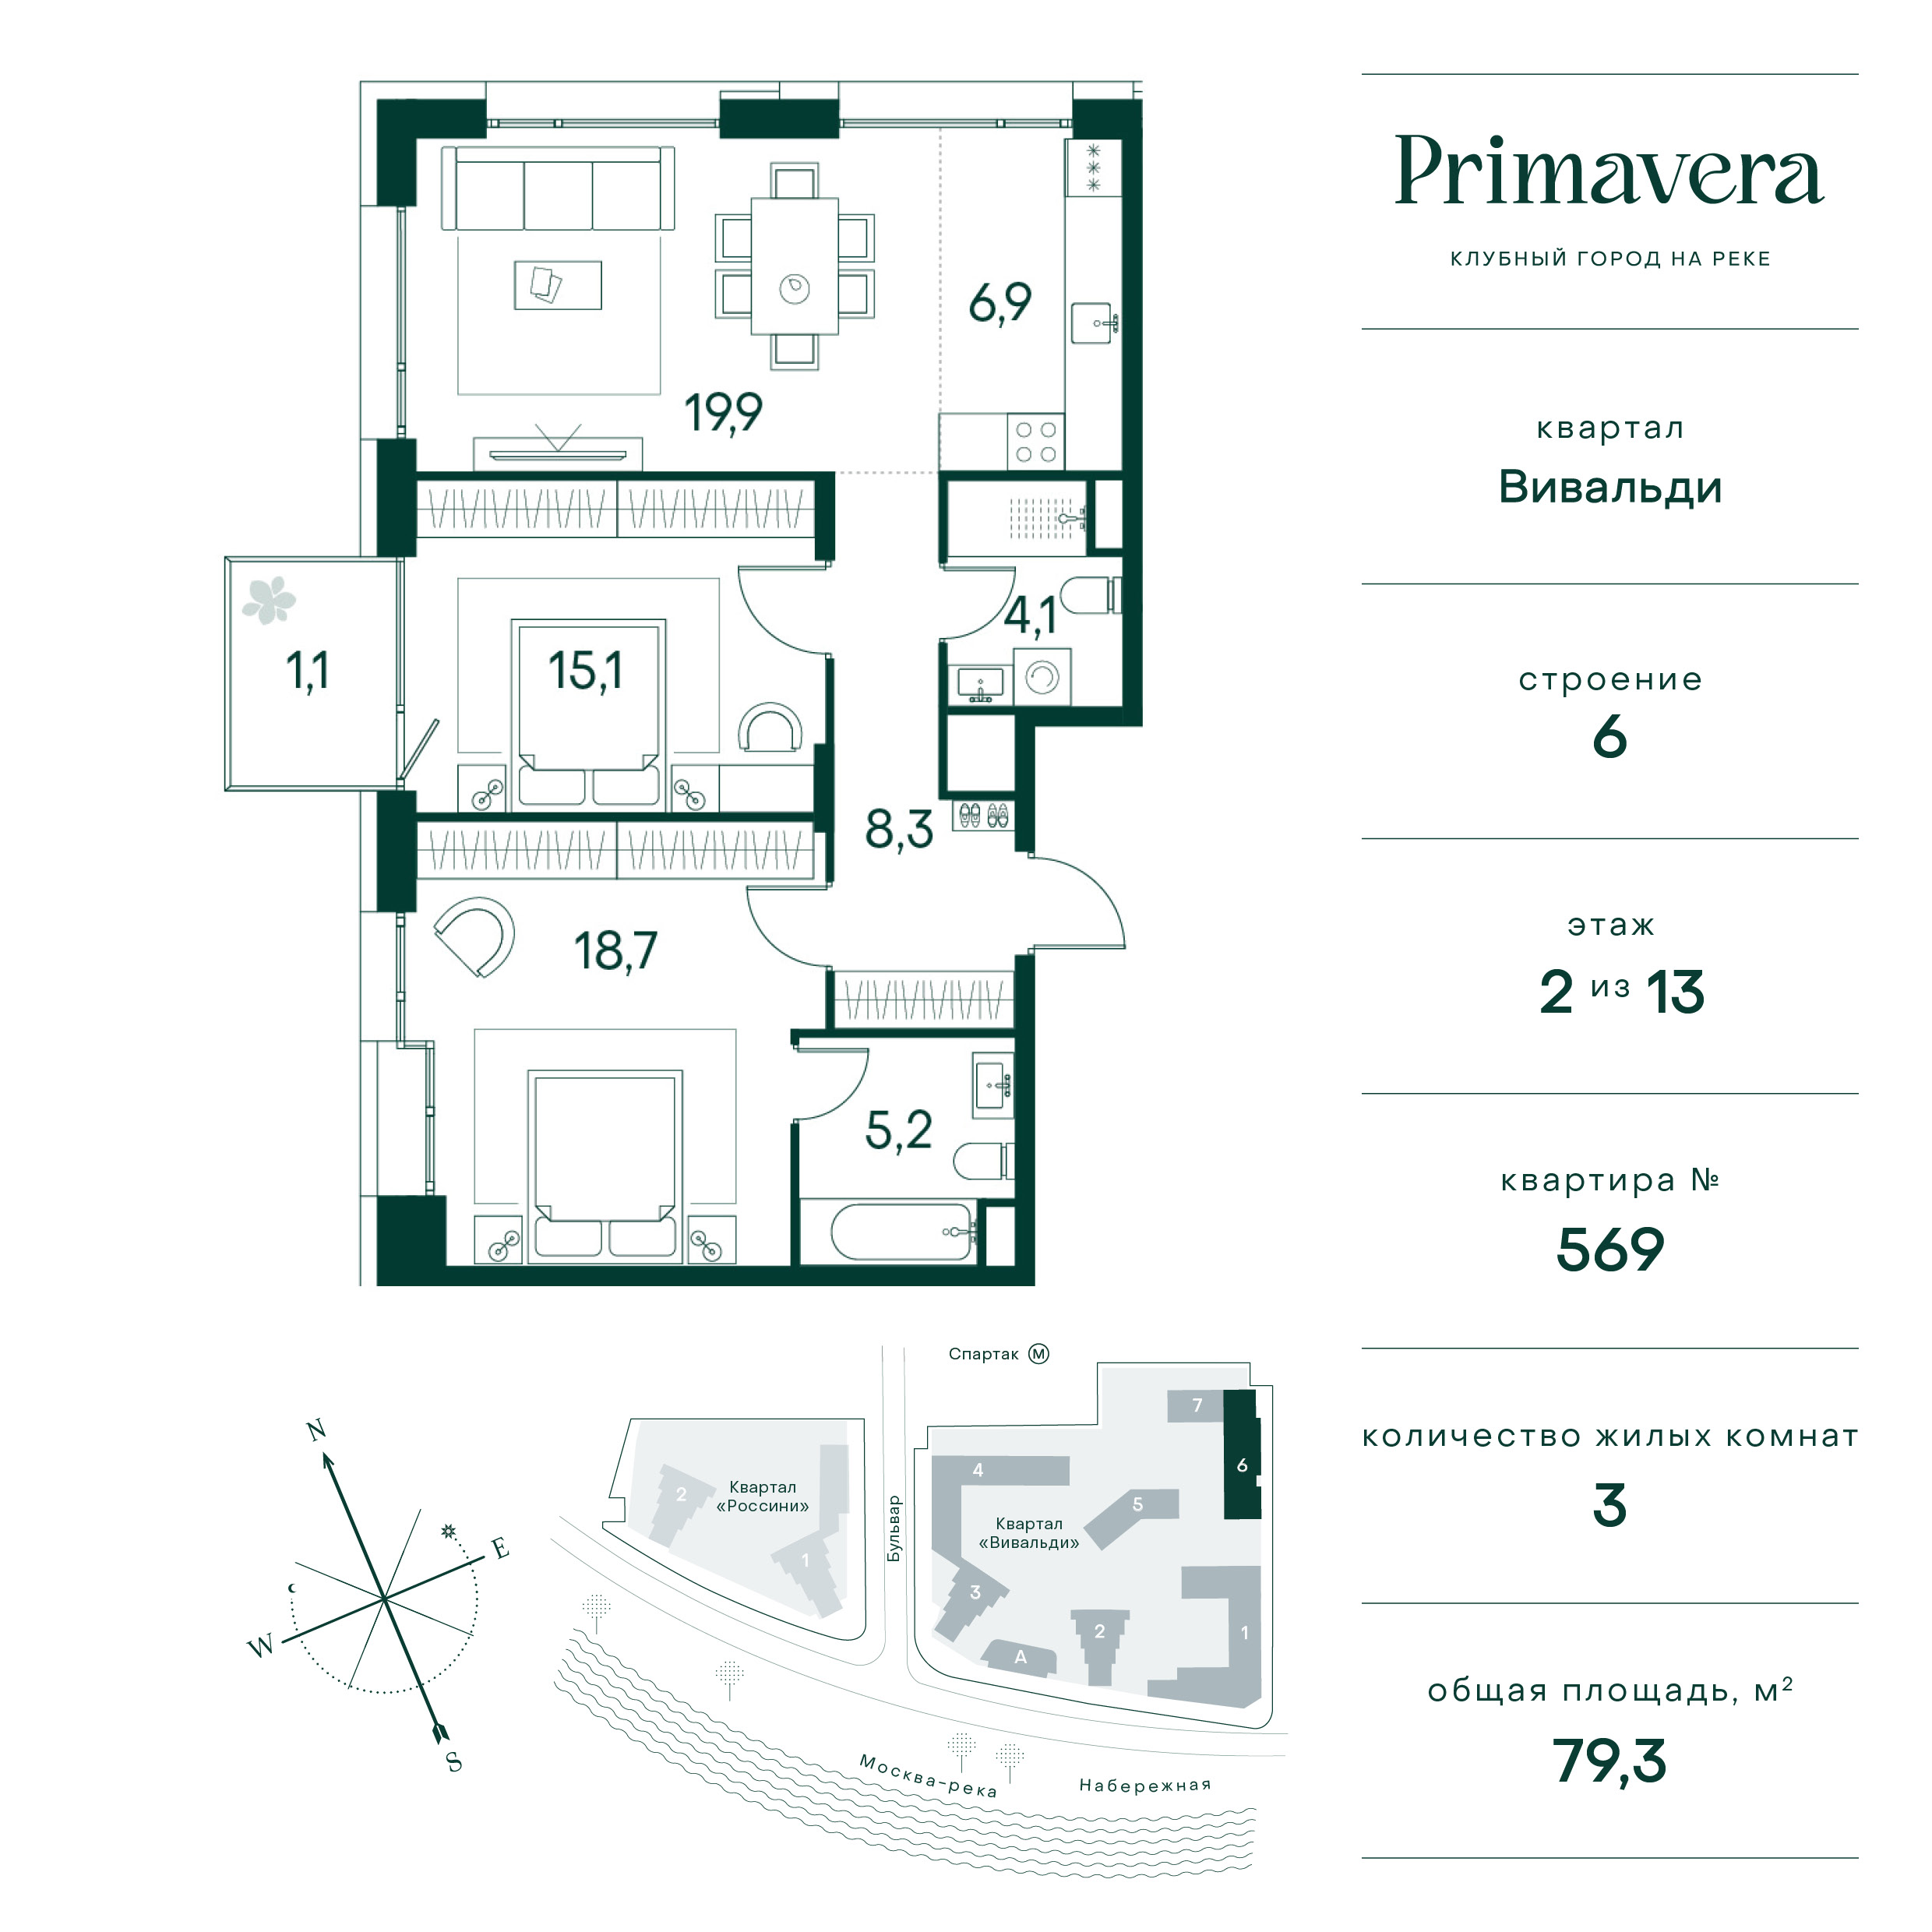 Планировка Квартира с 2 спальнями 79.3 м2 в ЖК Primavera